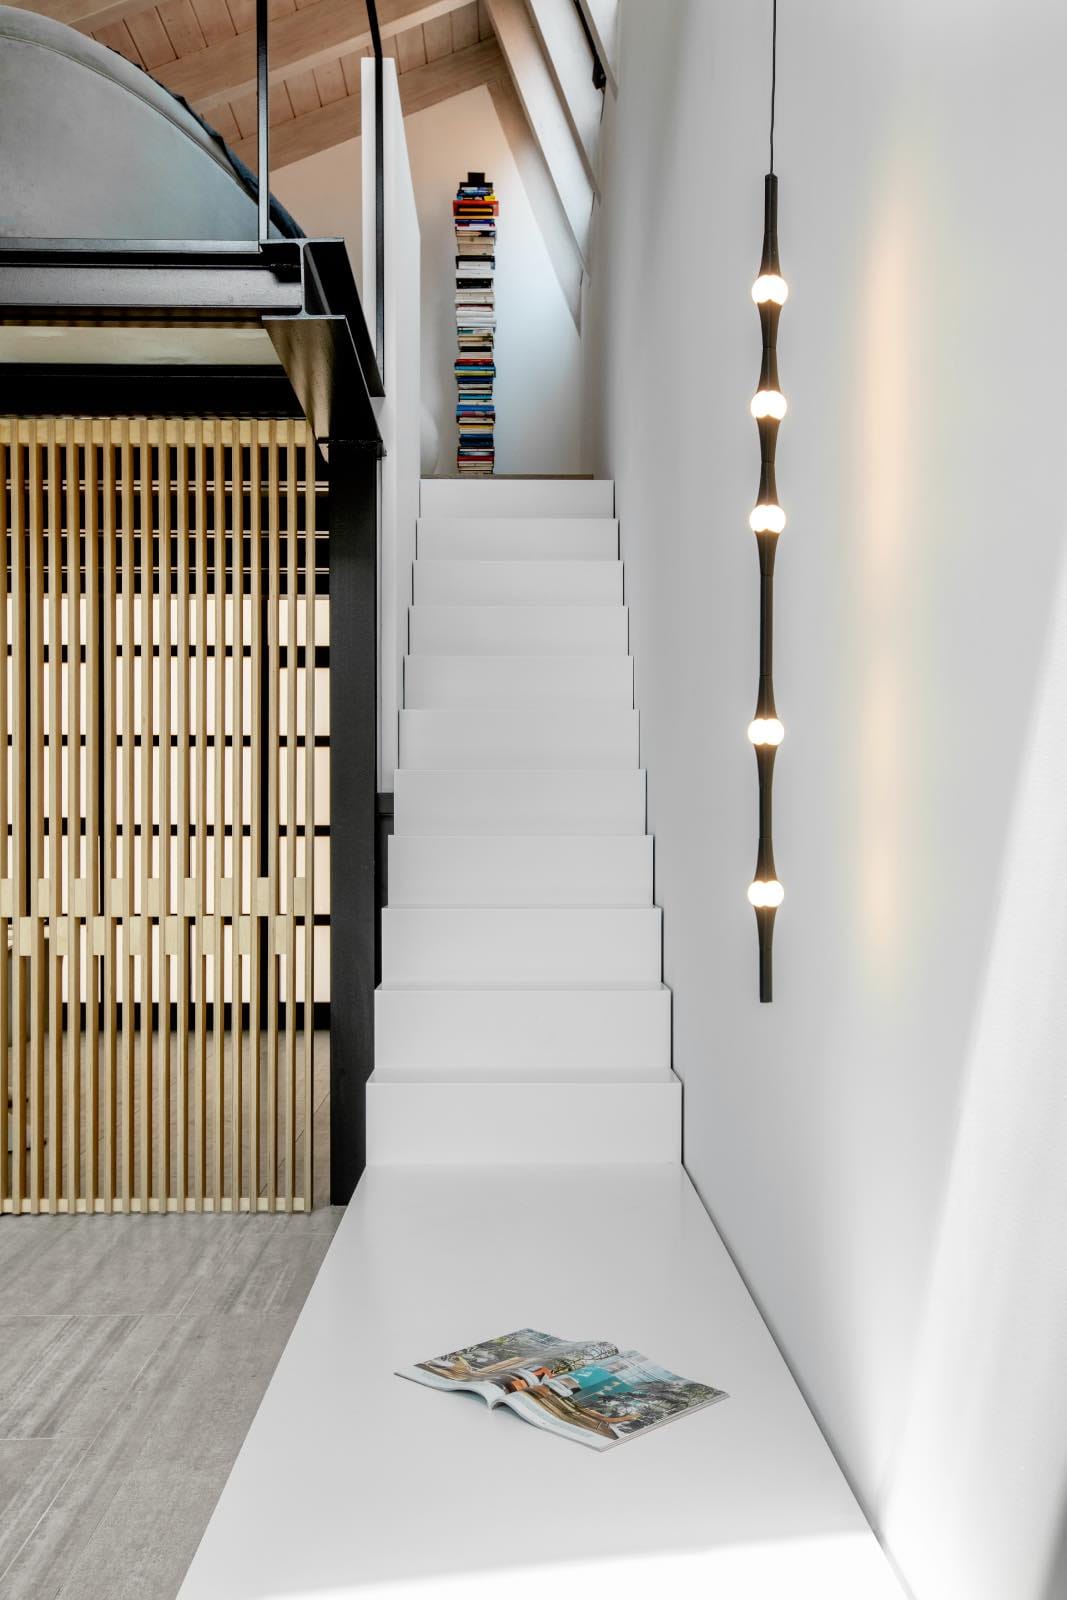 escaleras minimalistas blancas en loft moderno industrial 